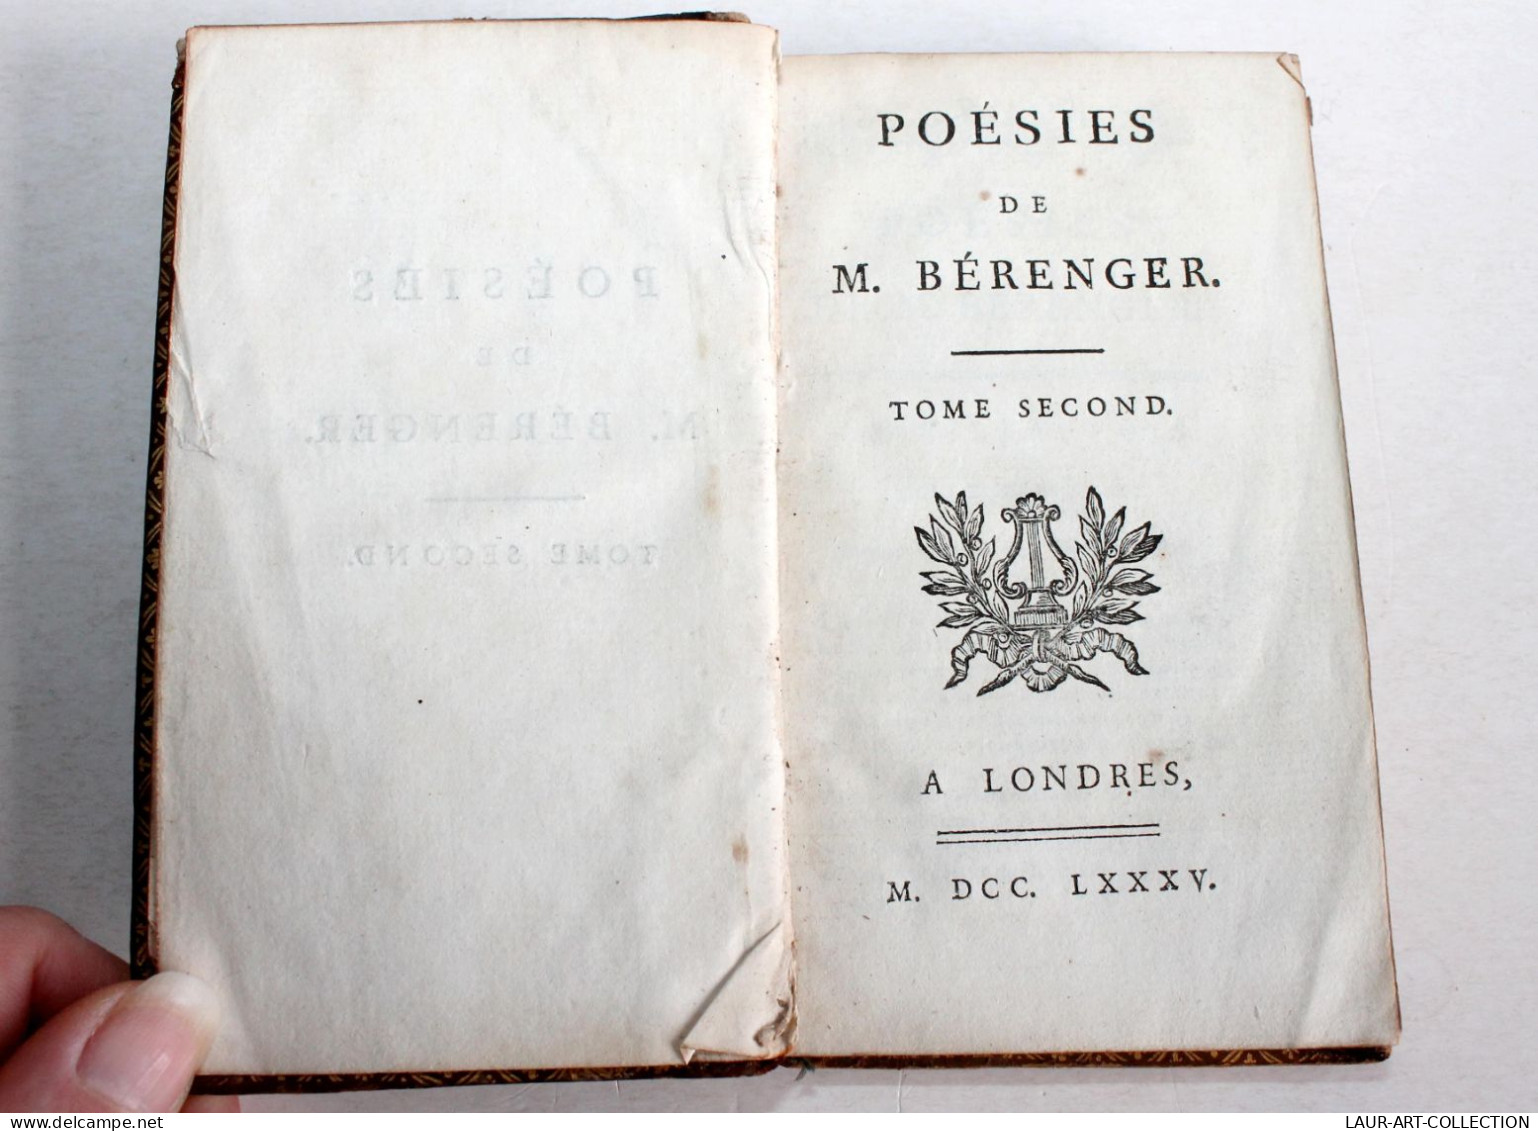 POESIES DE M. BERANGER TOME SECOND 1785 A LONDRES, LIVRE 18e CONTENANT 55 PIECES / ANCIEN LIVRE XVIIIe SIECLE (1803.132) - Französische Autoren